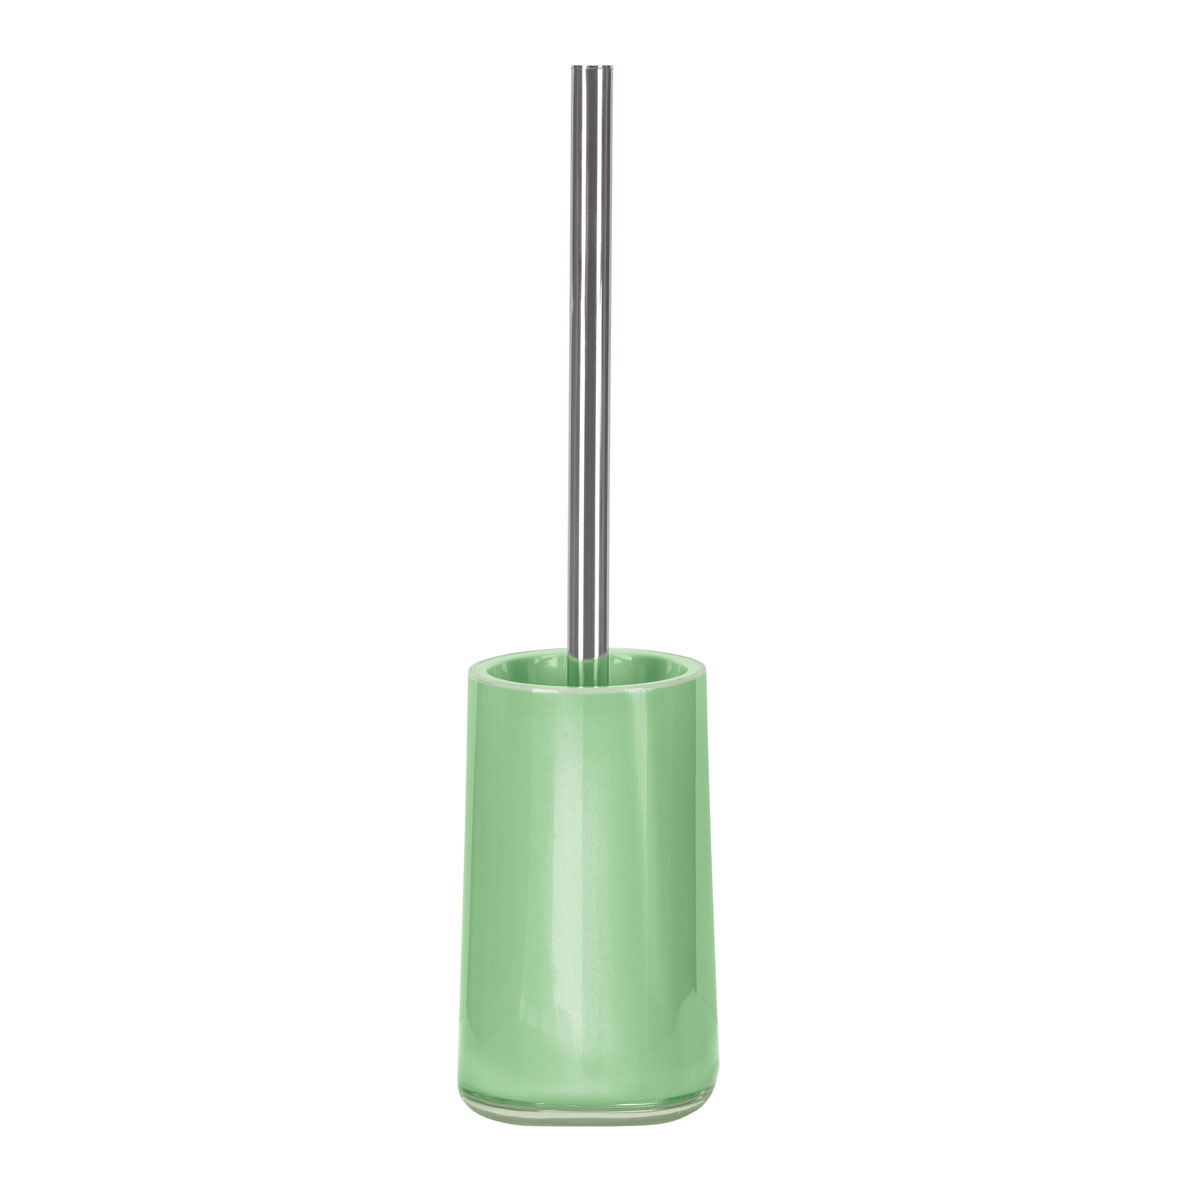 Kleine Kunststoff | gruen WC-Bürstengarnitur Mable grün Wolke 206080 |